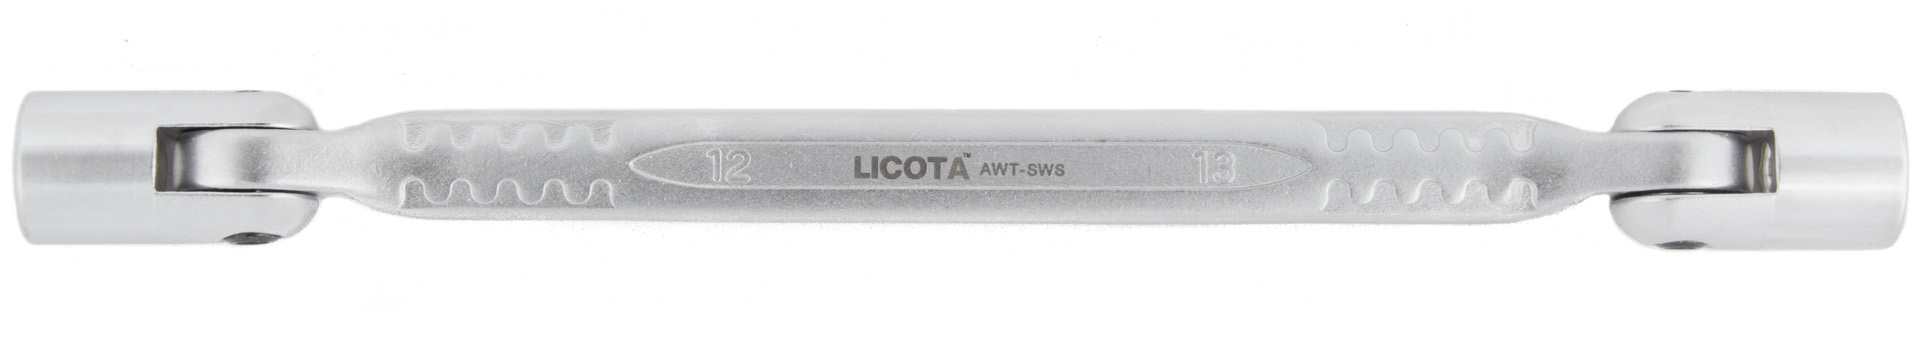 Ключ торцевой карданный (колокольчик)Licota   _0